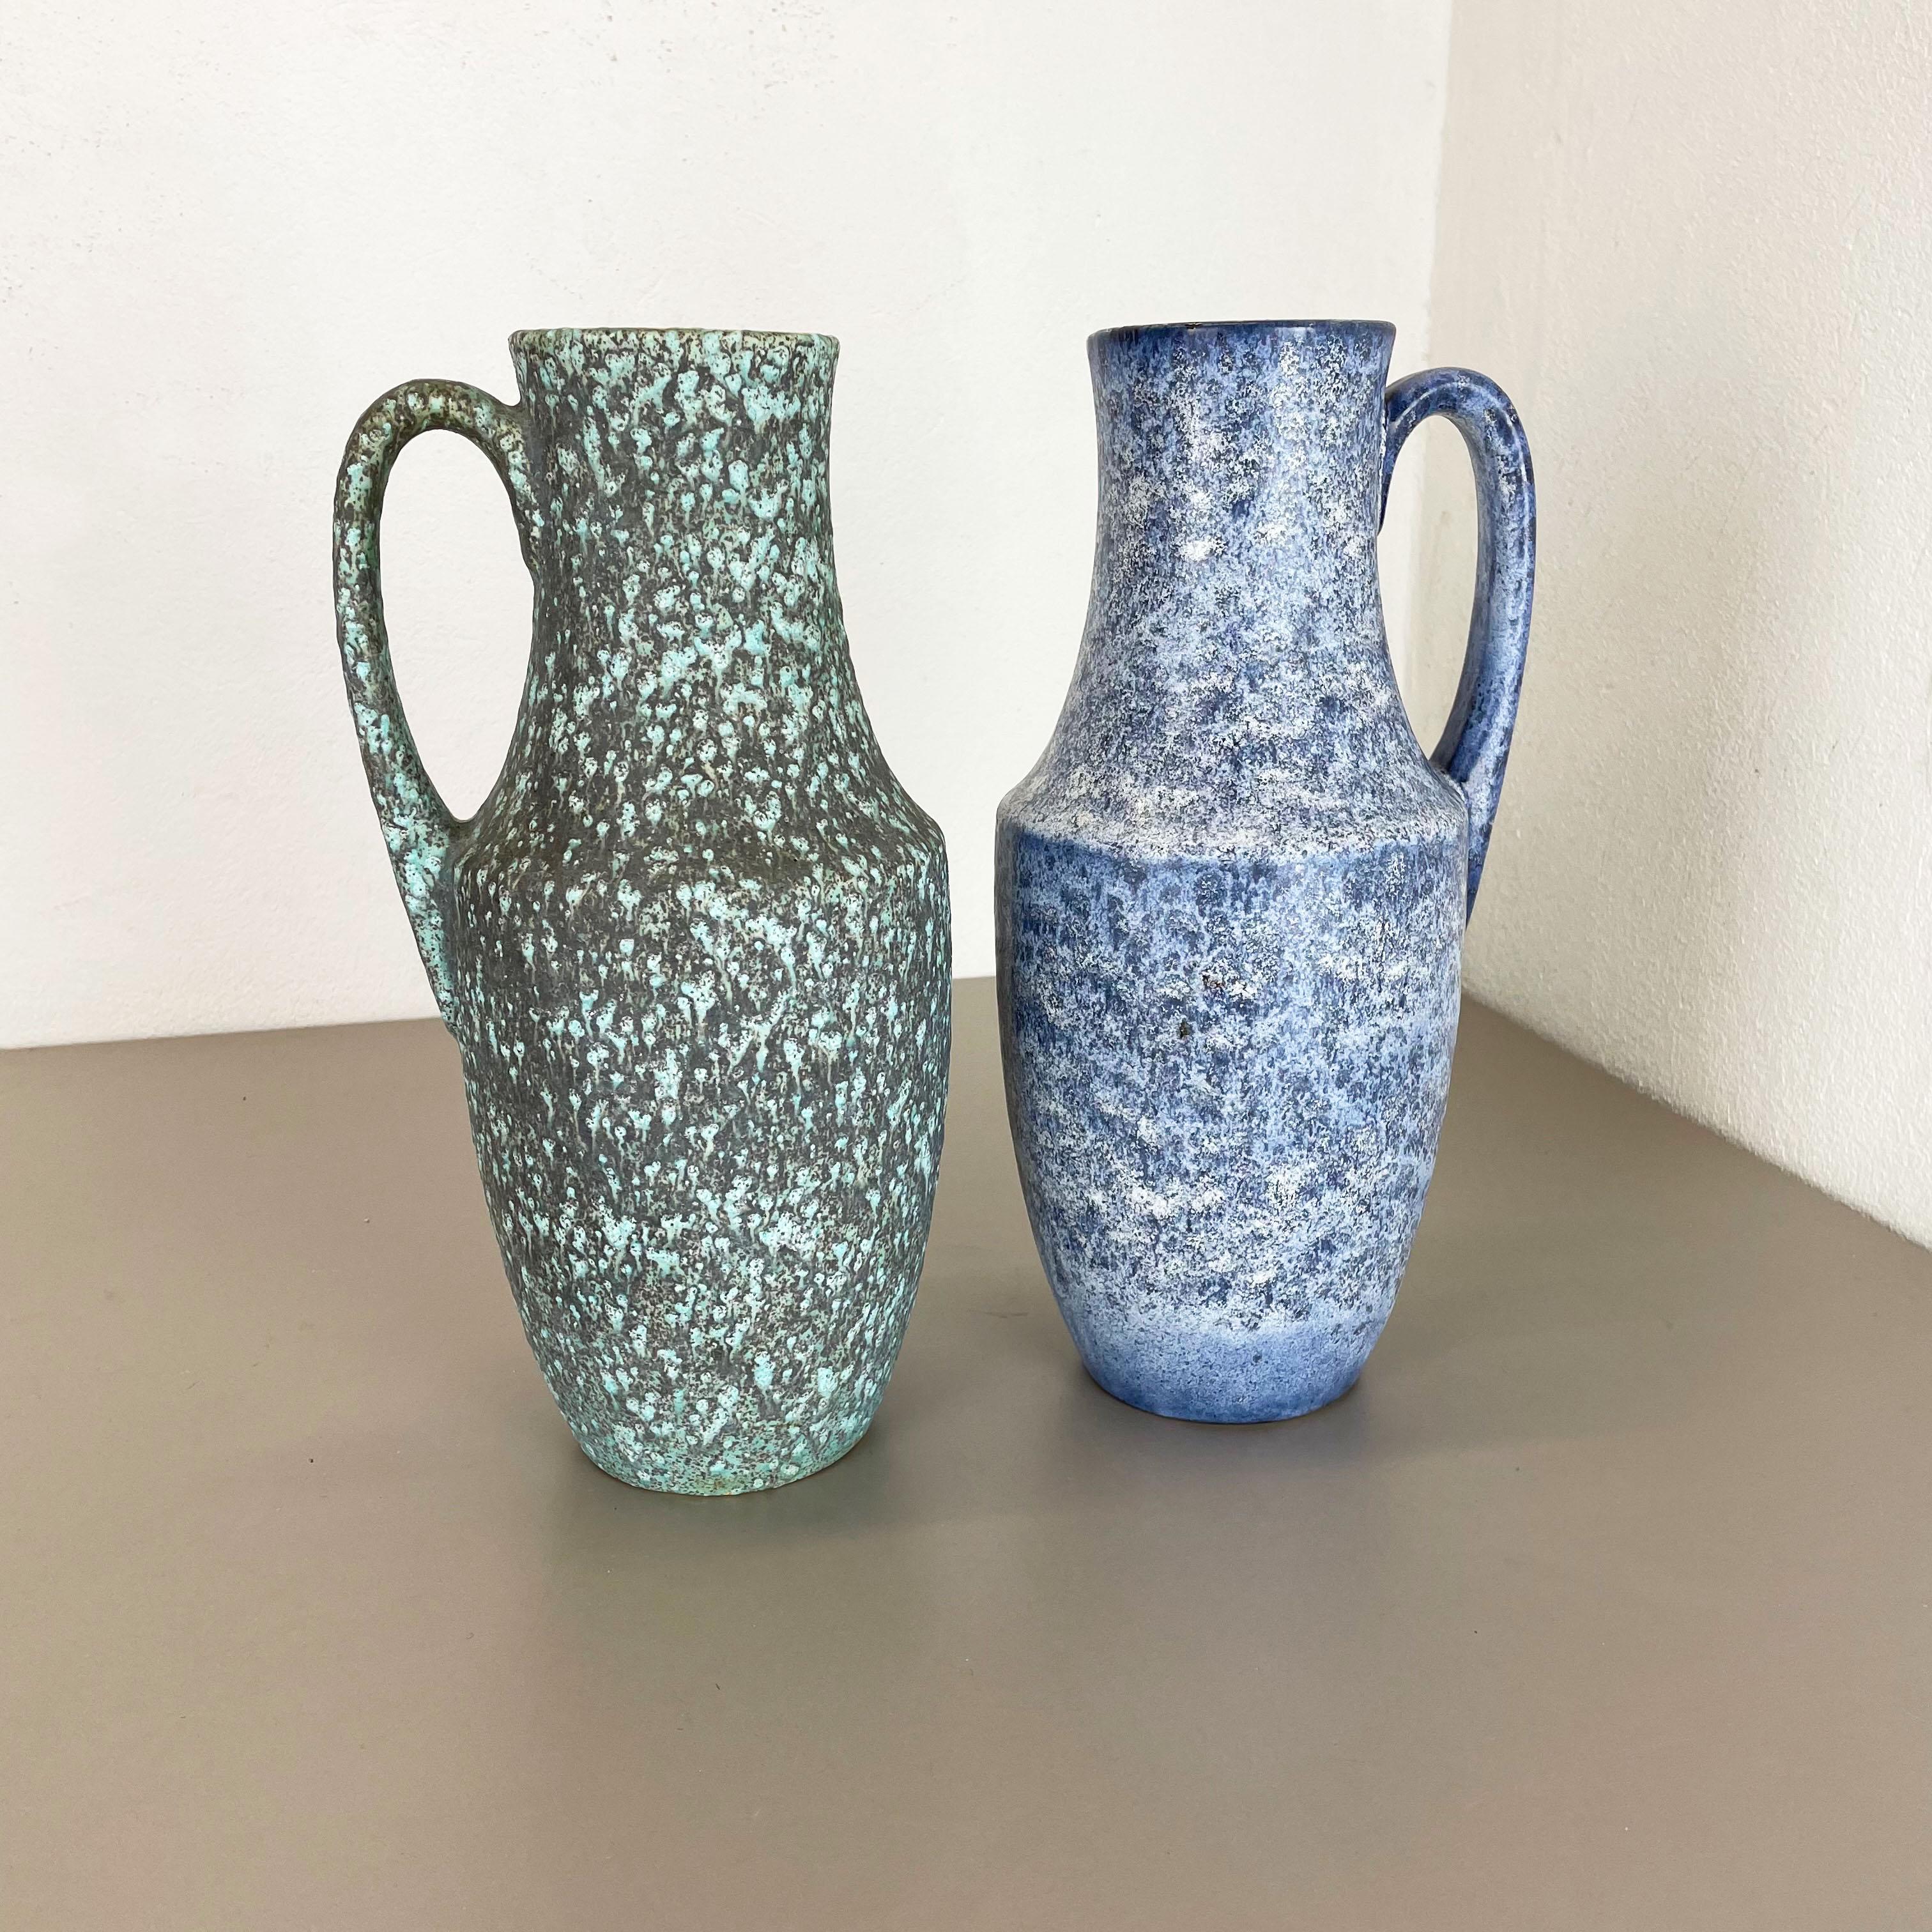 Artikel:

Set aus zwei fetten Lavakunstvasen

Produzent:

Scheurich, Deutschland



Jahrzehnt:

1970s


 

Diese originalen Vintage-Vasen wurden in den 1970er Jahren in Deutschland hergestellt. Sie ist aus Keramik in fetter